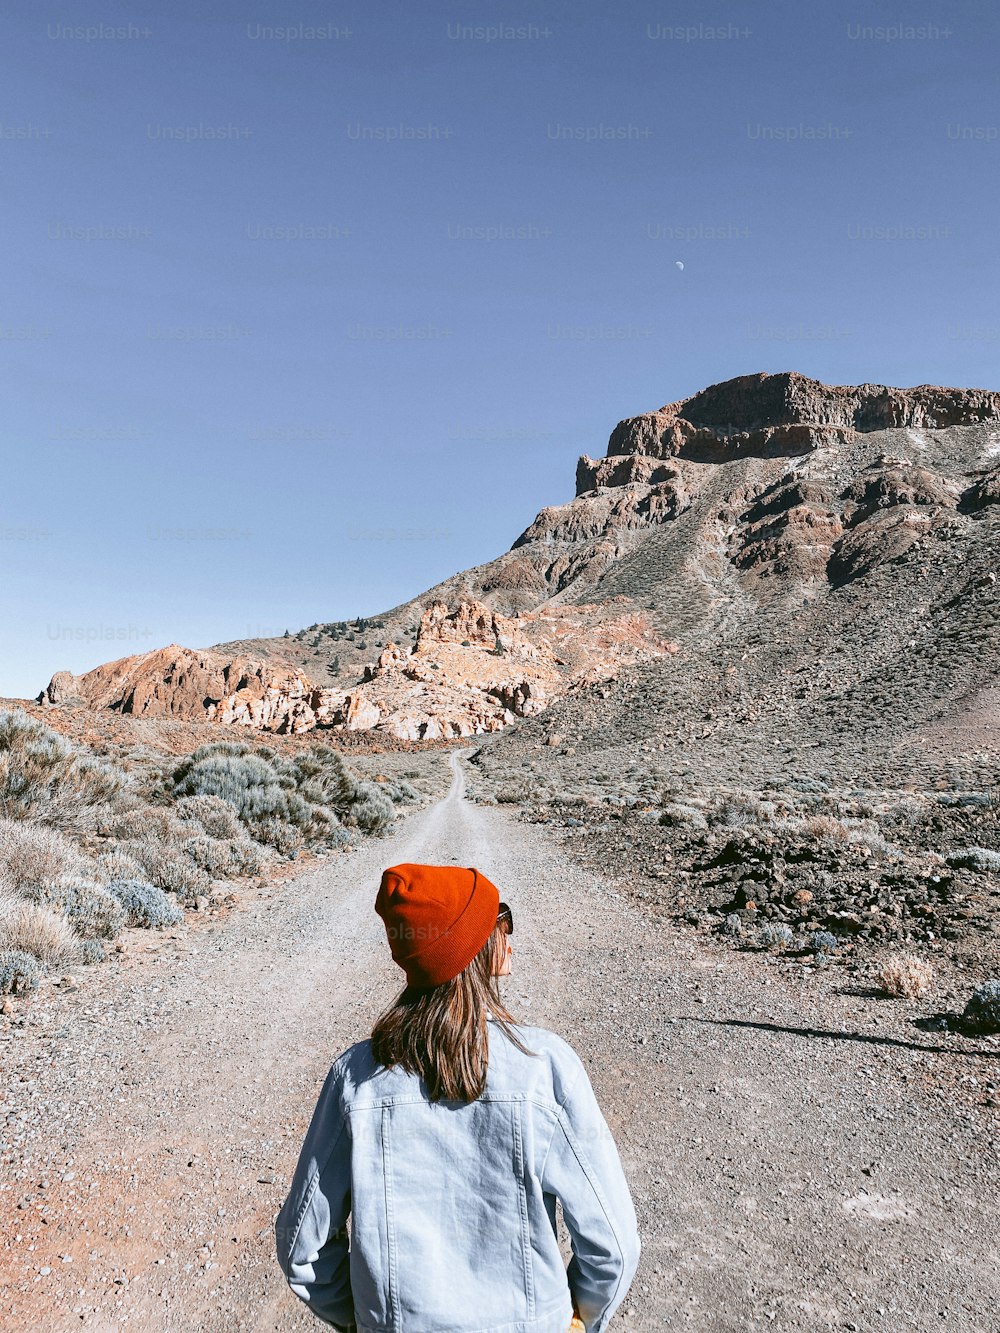 Femme insouciante courant sur la route des montagnes, profitant du voyage dans la vallée du désert. Image réalisée sur un téléphone portable